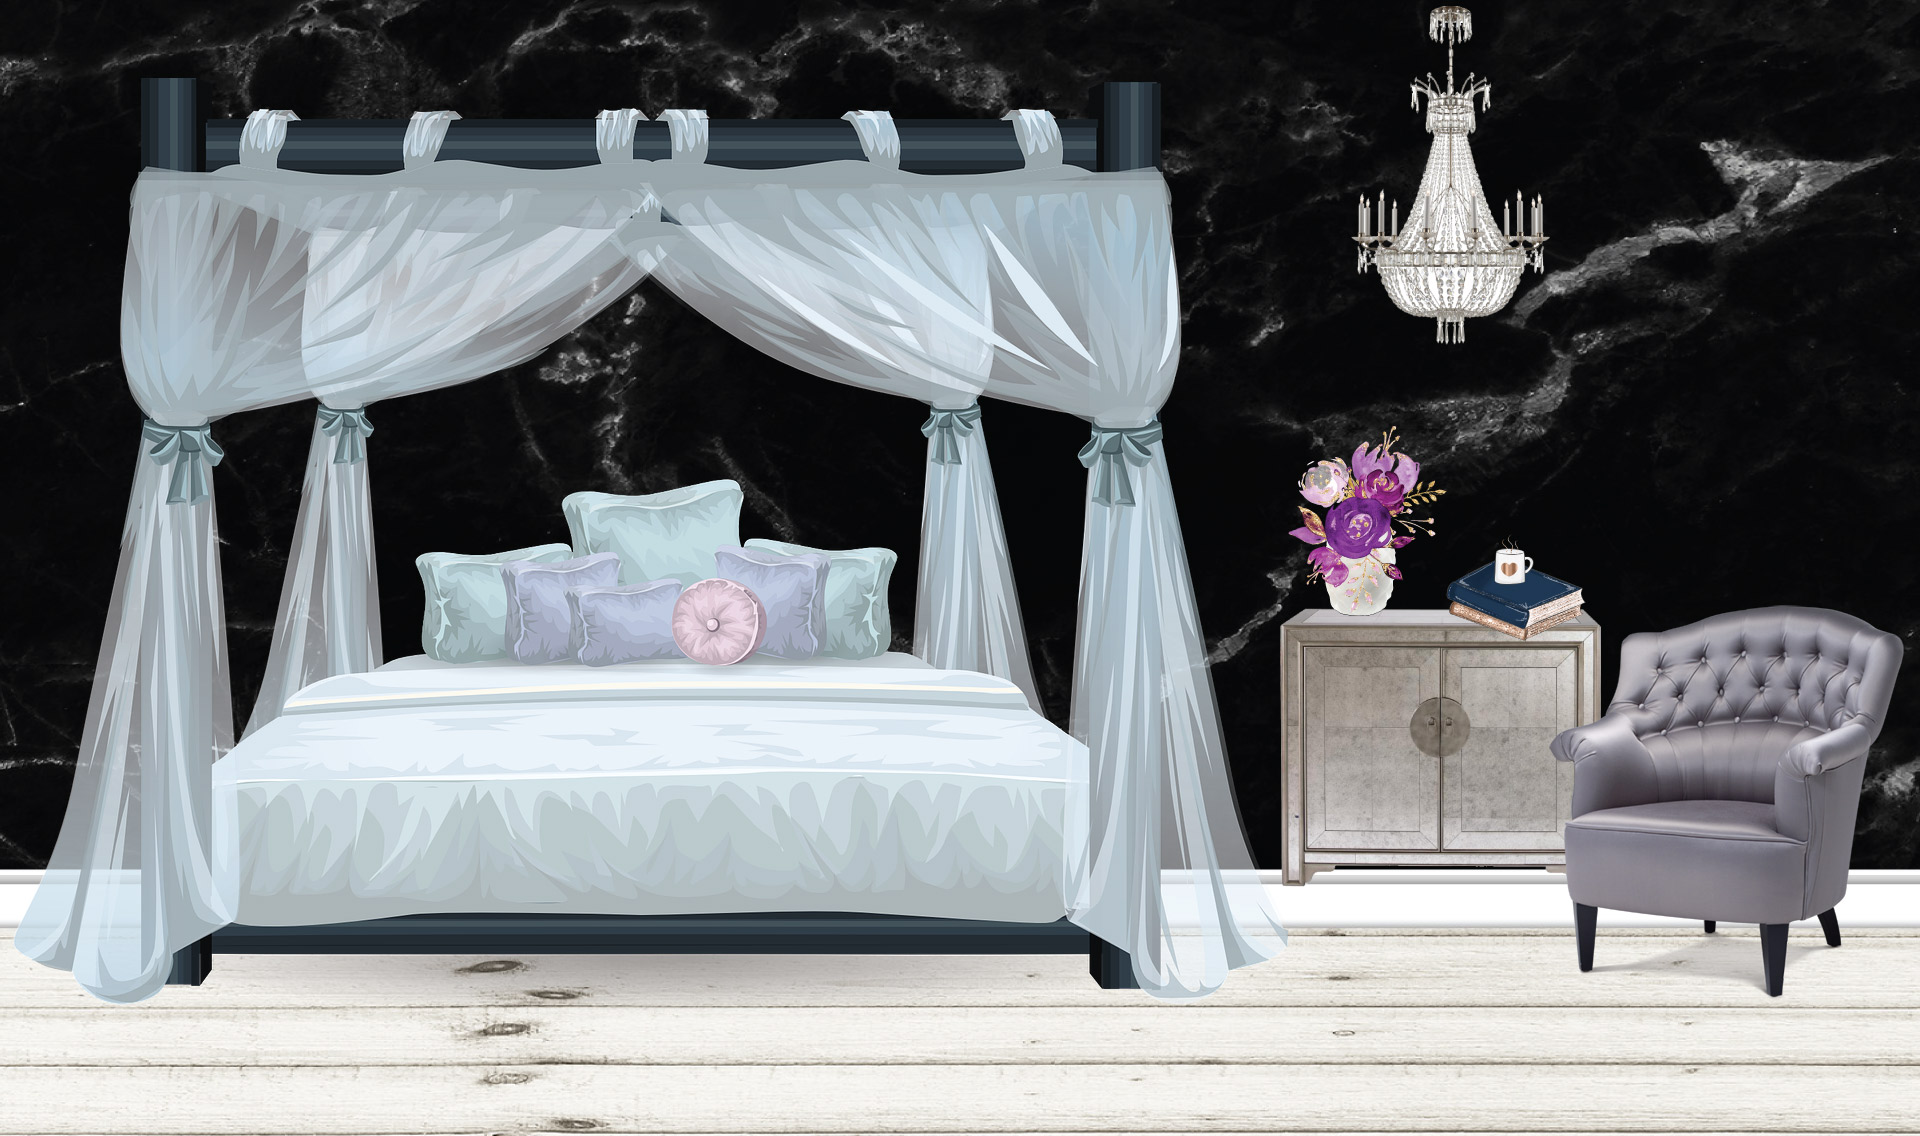 INT. LUXURY MARBLE BEDROOM – NIGHT